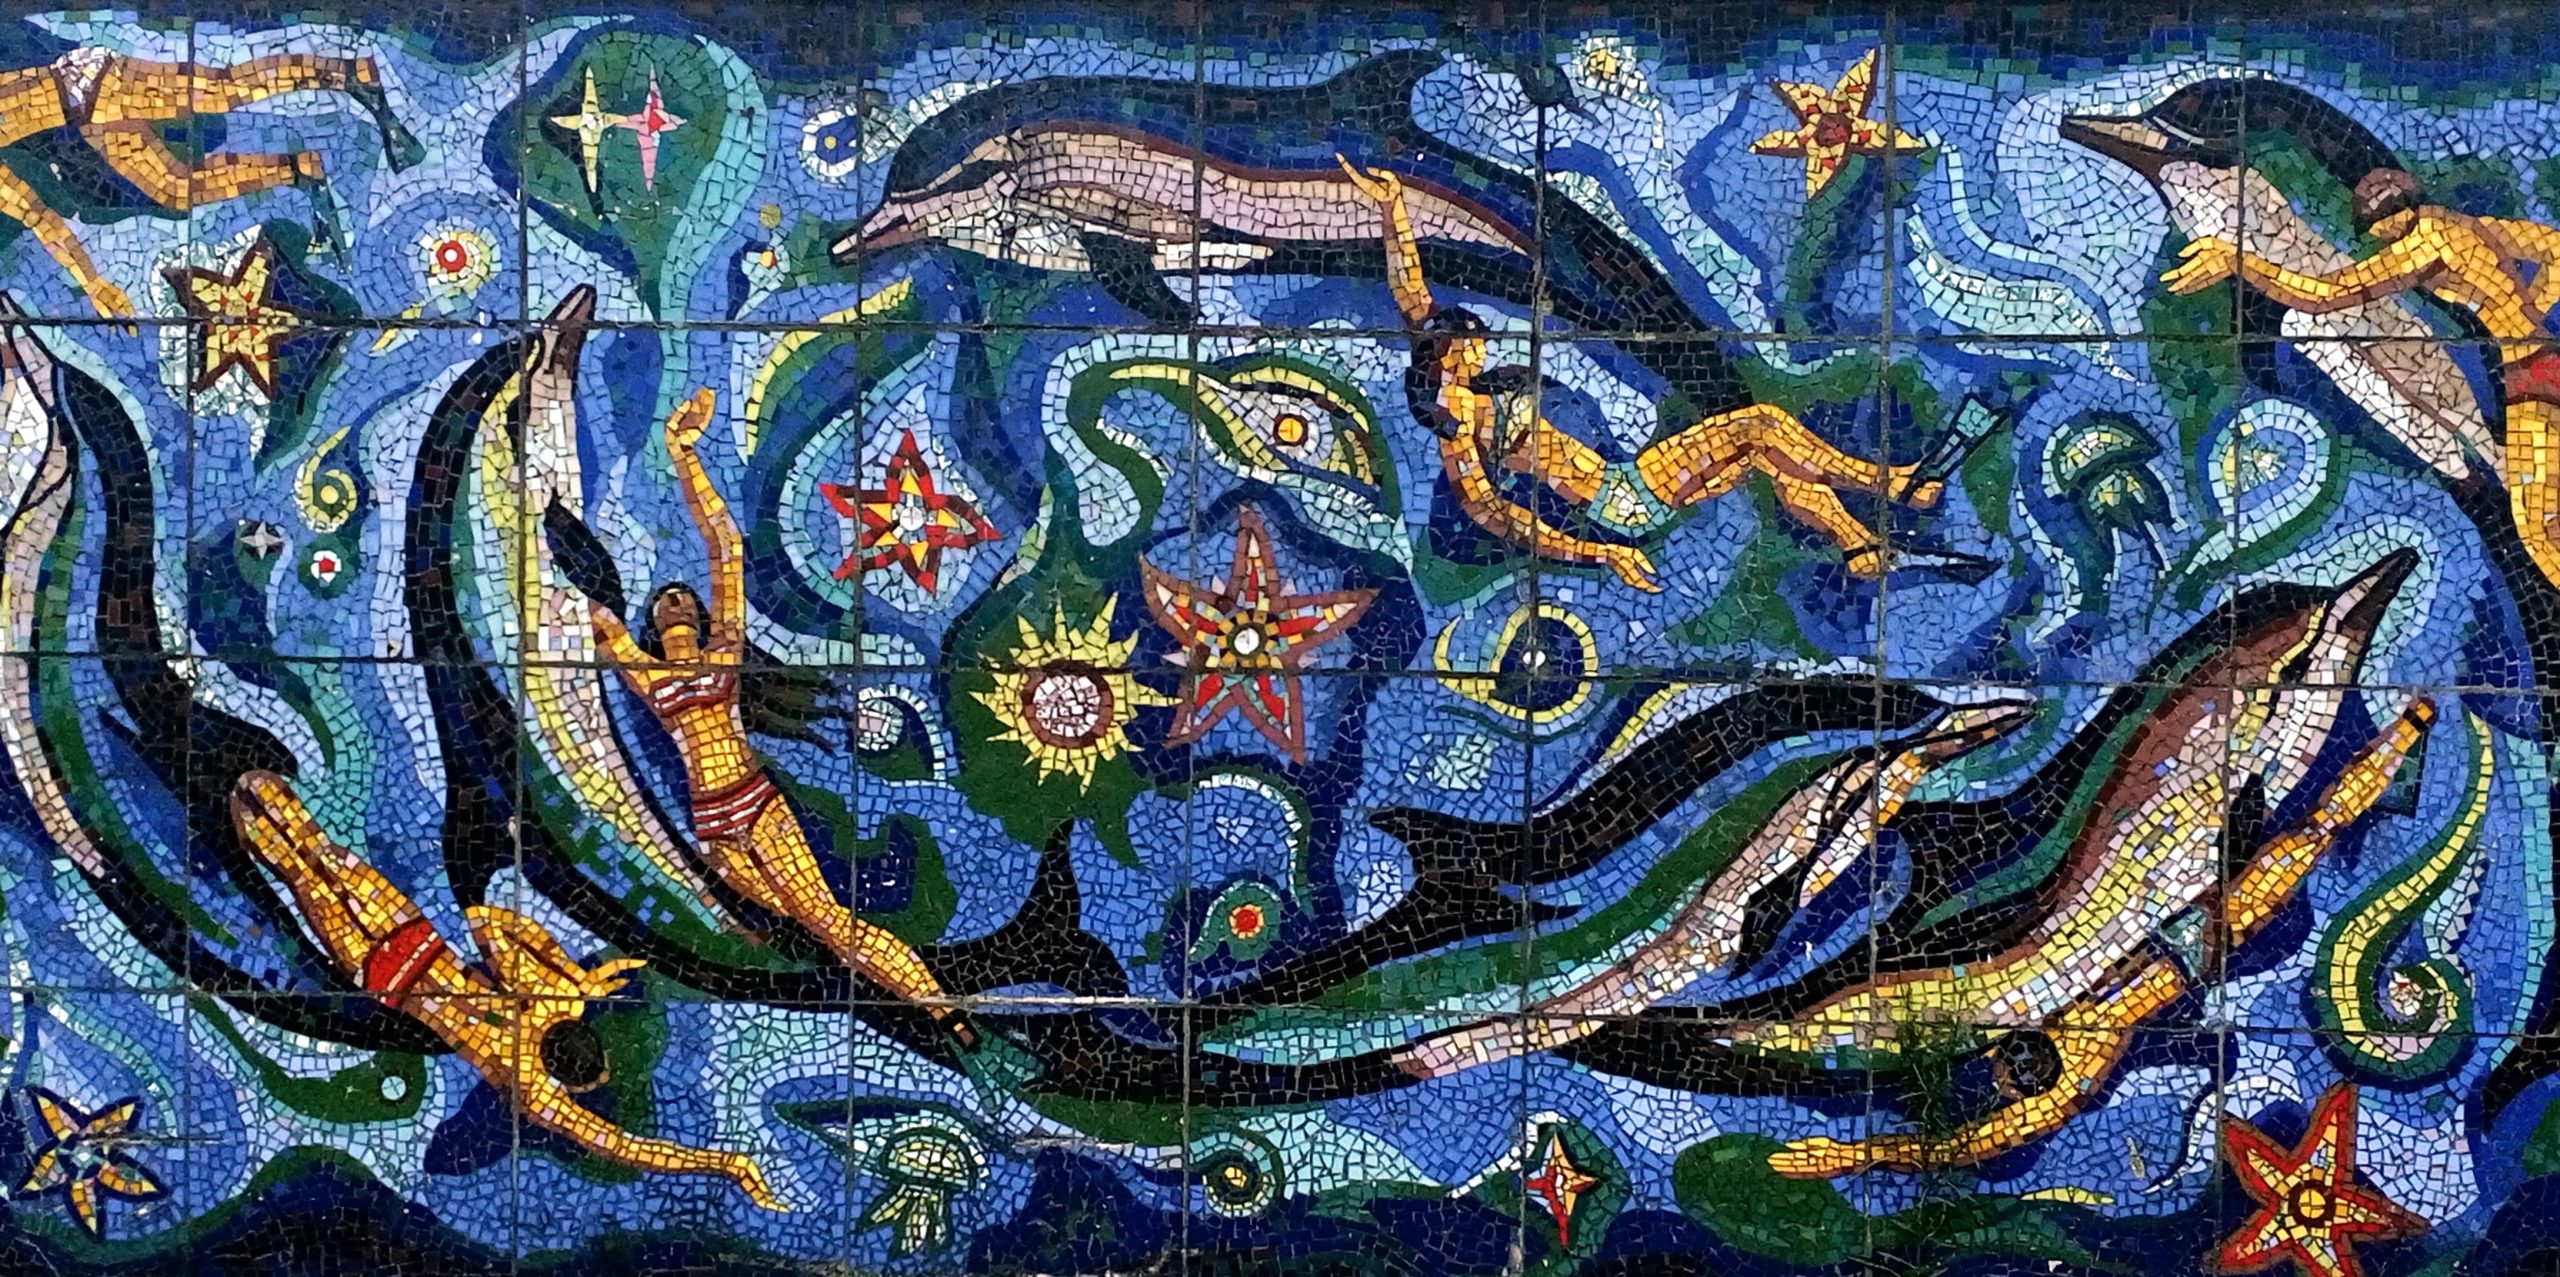 Batumi Mosaic